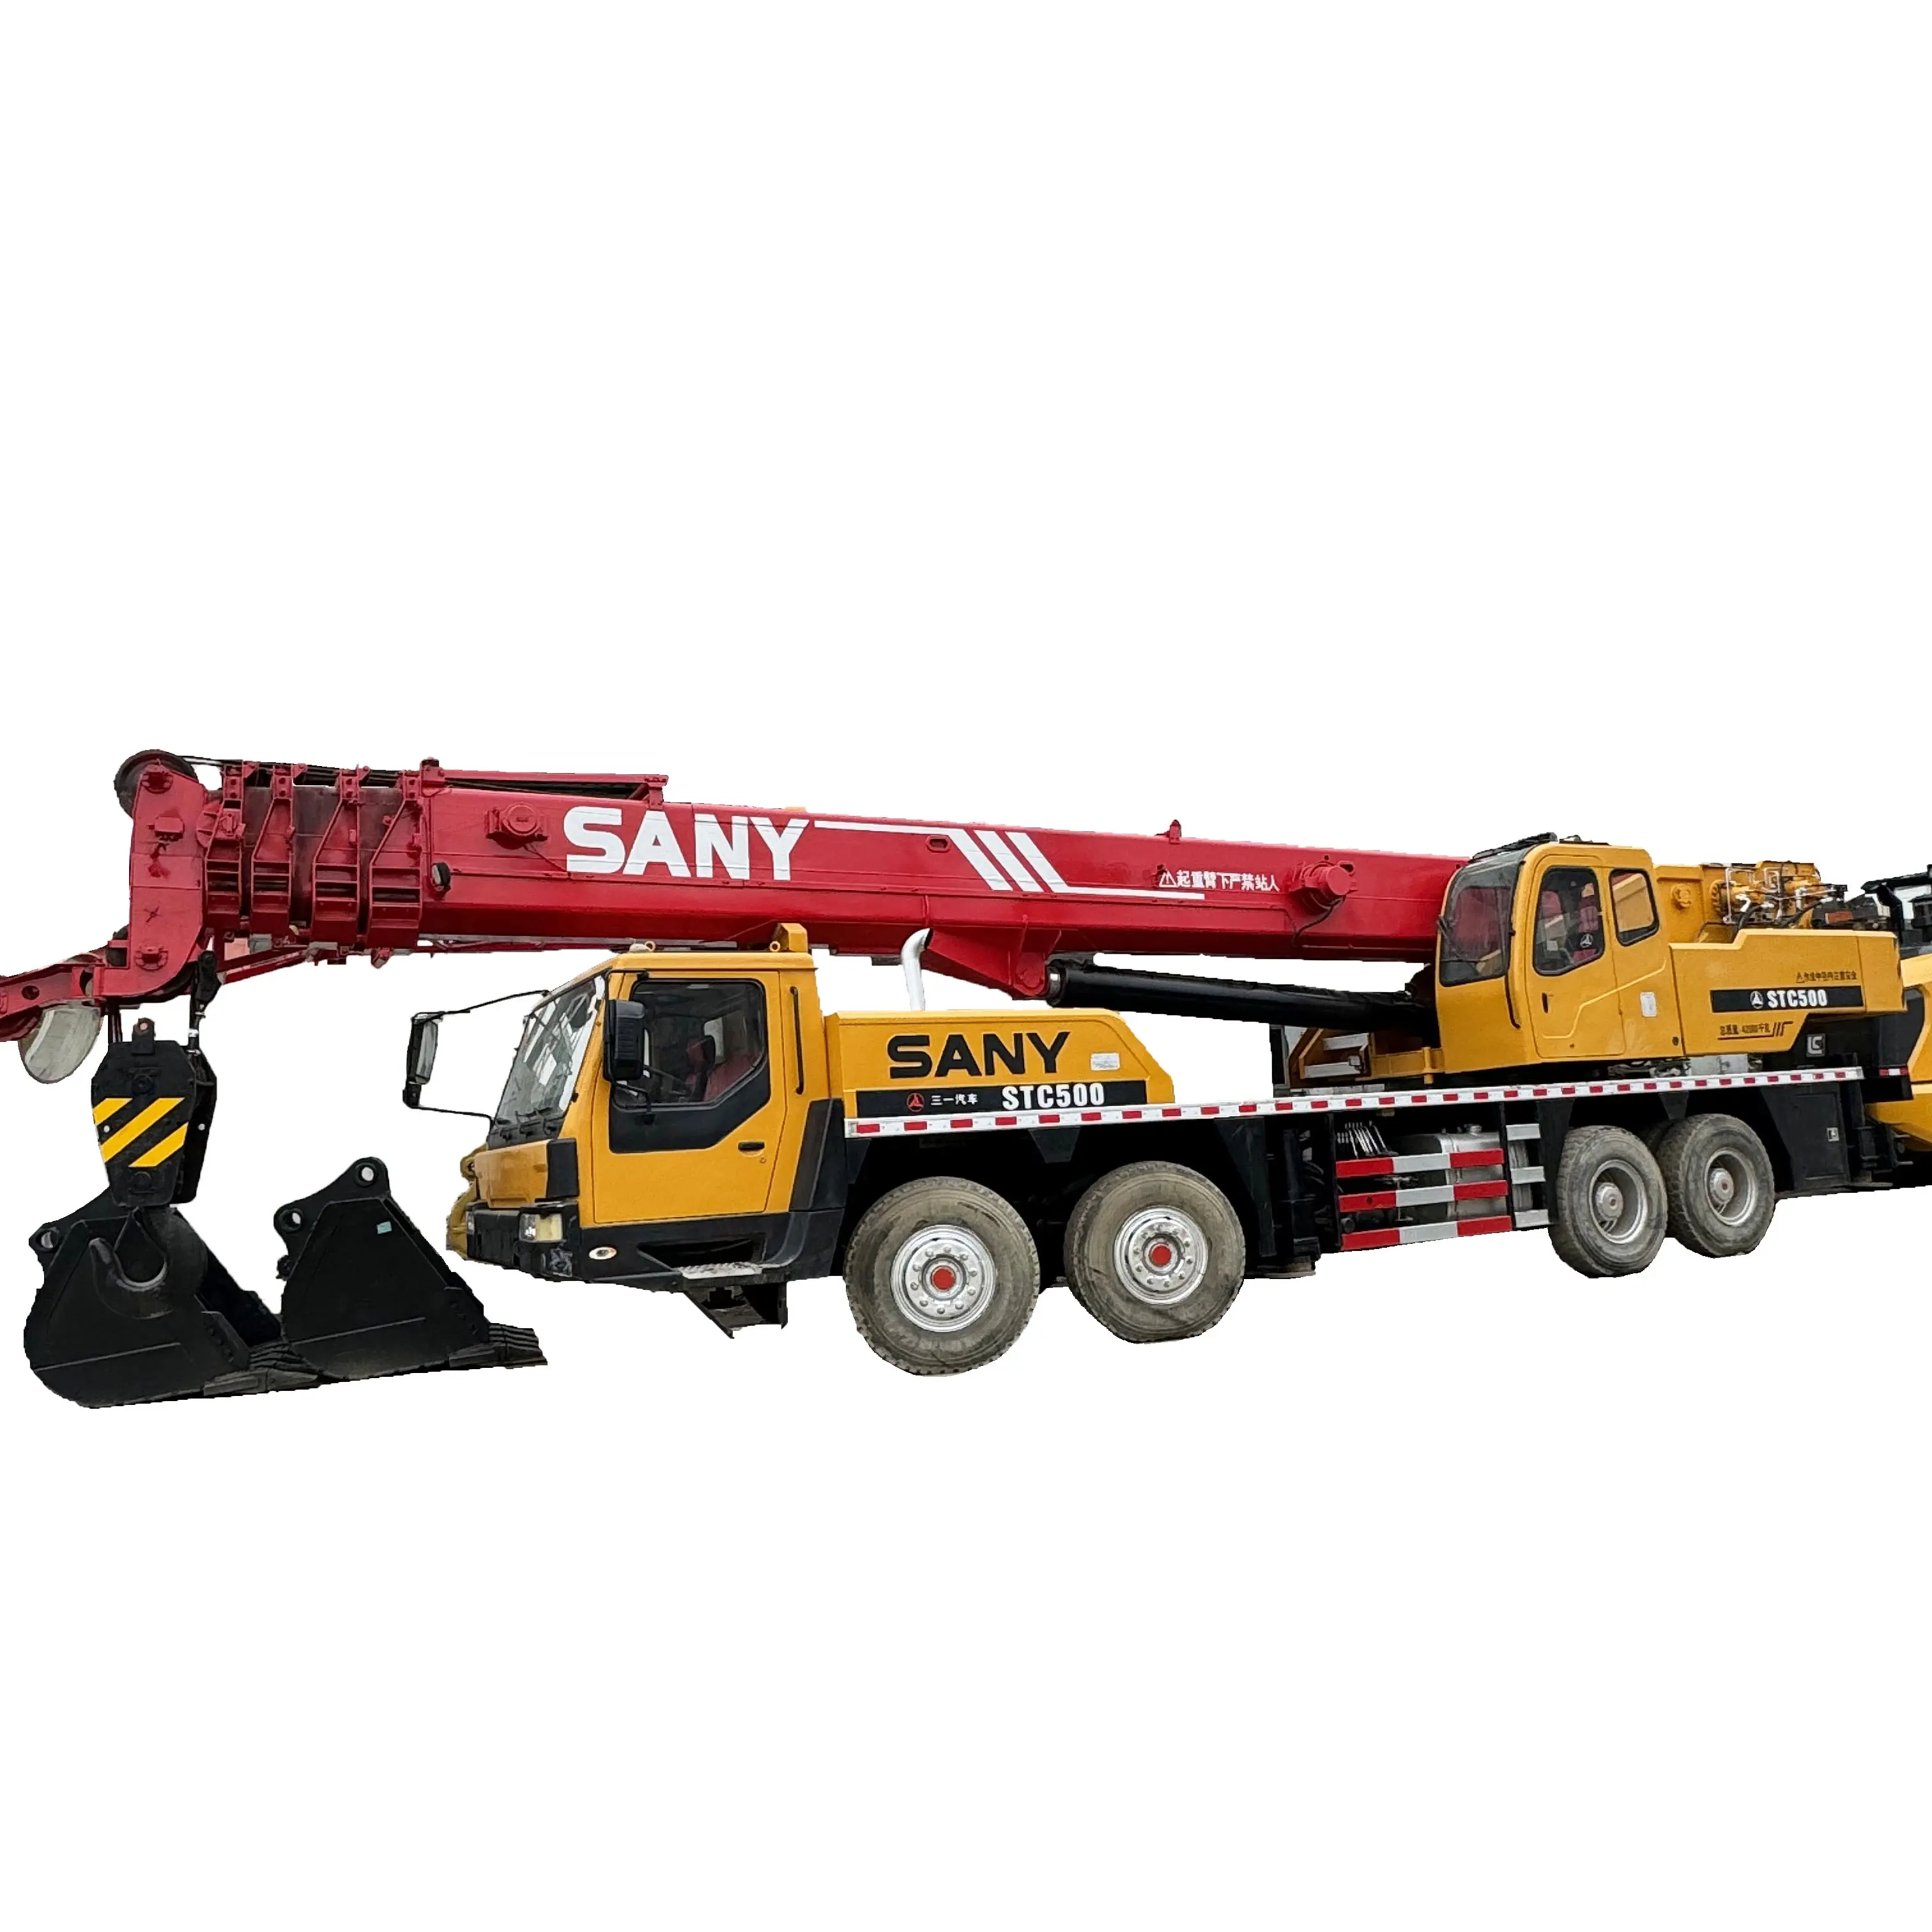 Grúa de camión usada de 50 toneladas Sany STC500 grúa móvil hidráulica de segunda mano precio barato grúa de camión usada